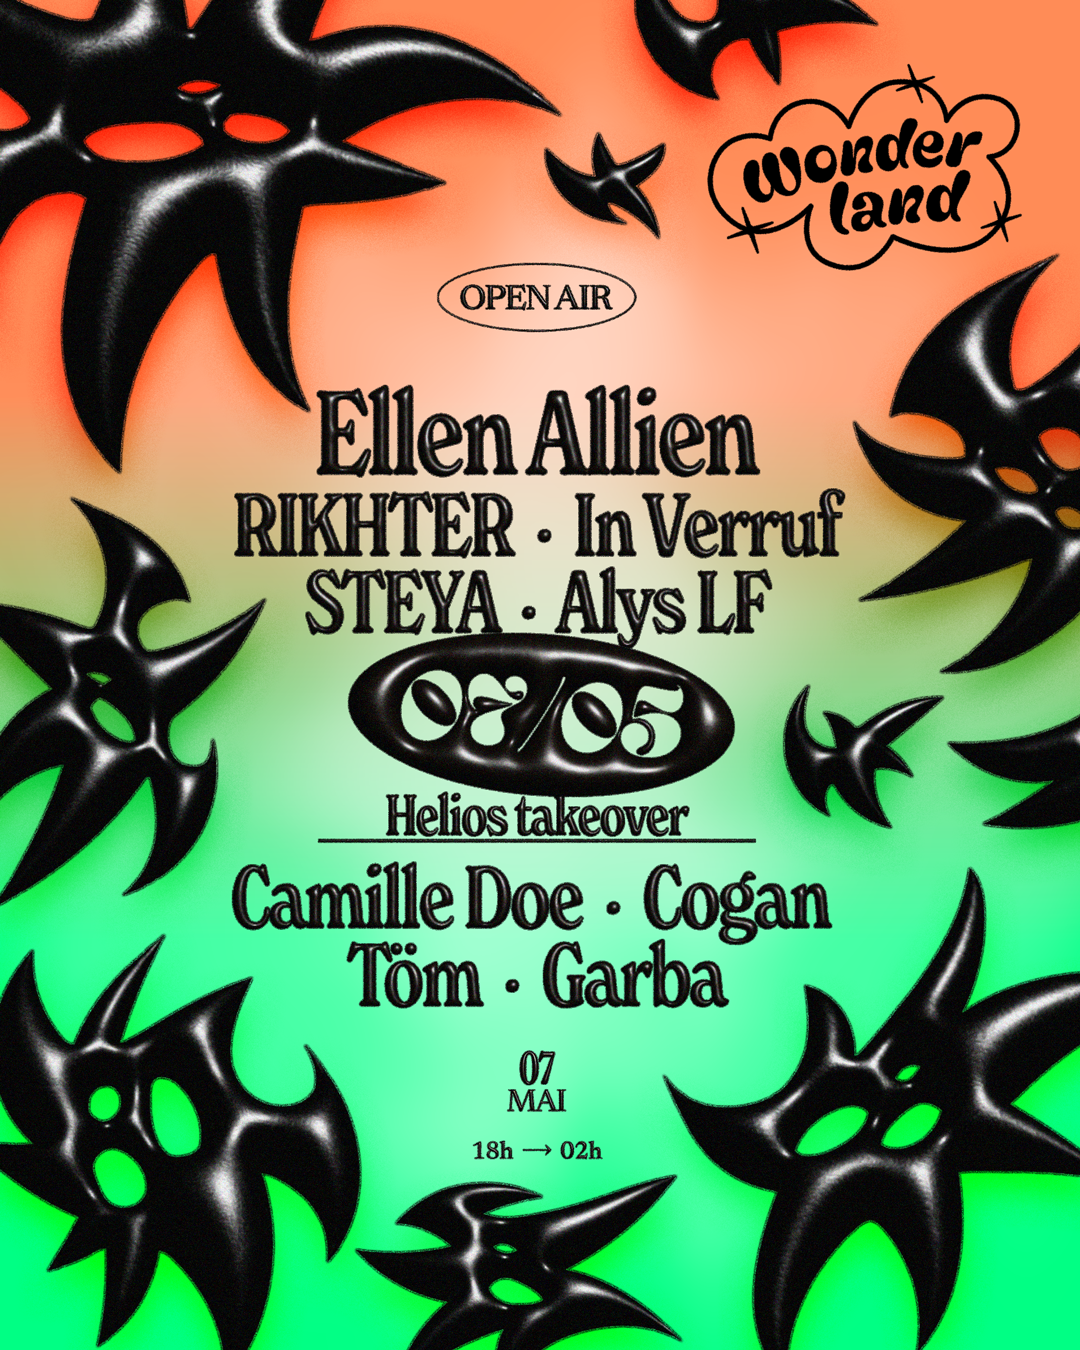 Wonderland invite: Ellen Allien - RIKHTER l In Verruf l STEYA l Alys LF l - フライヤー裏